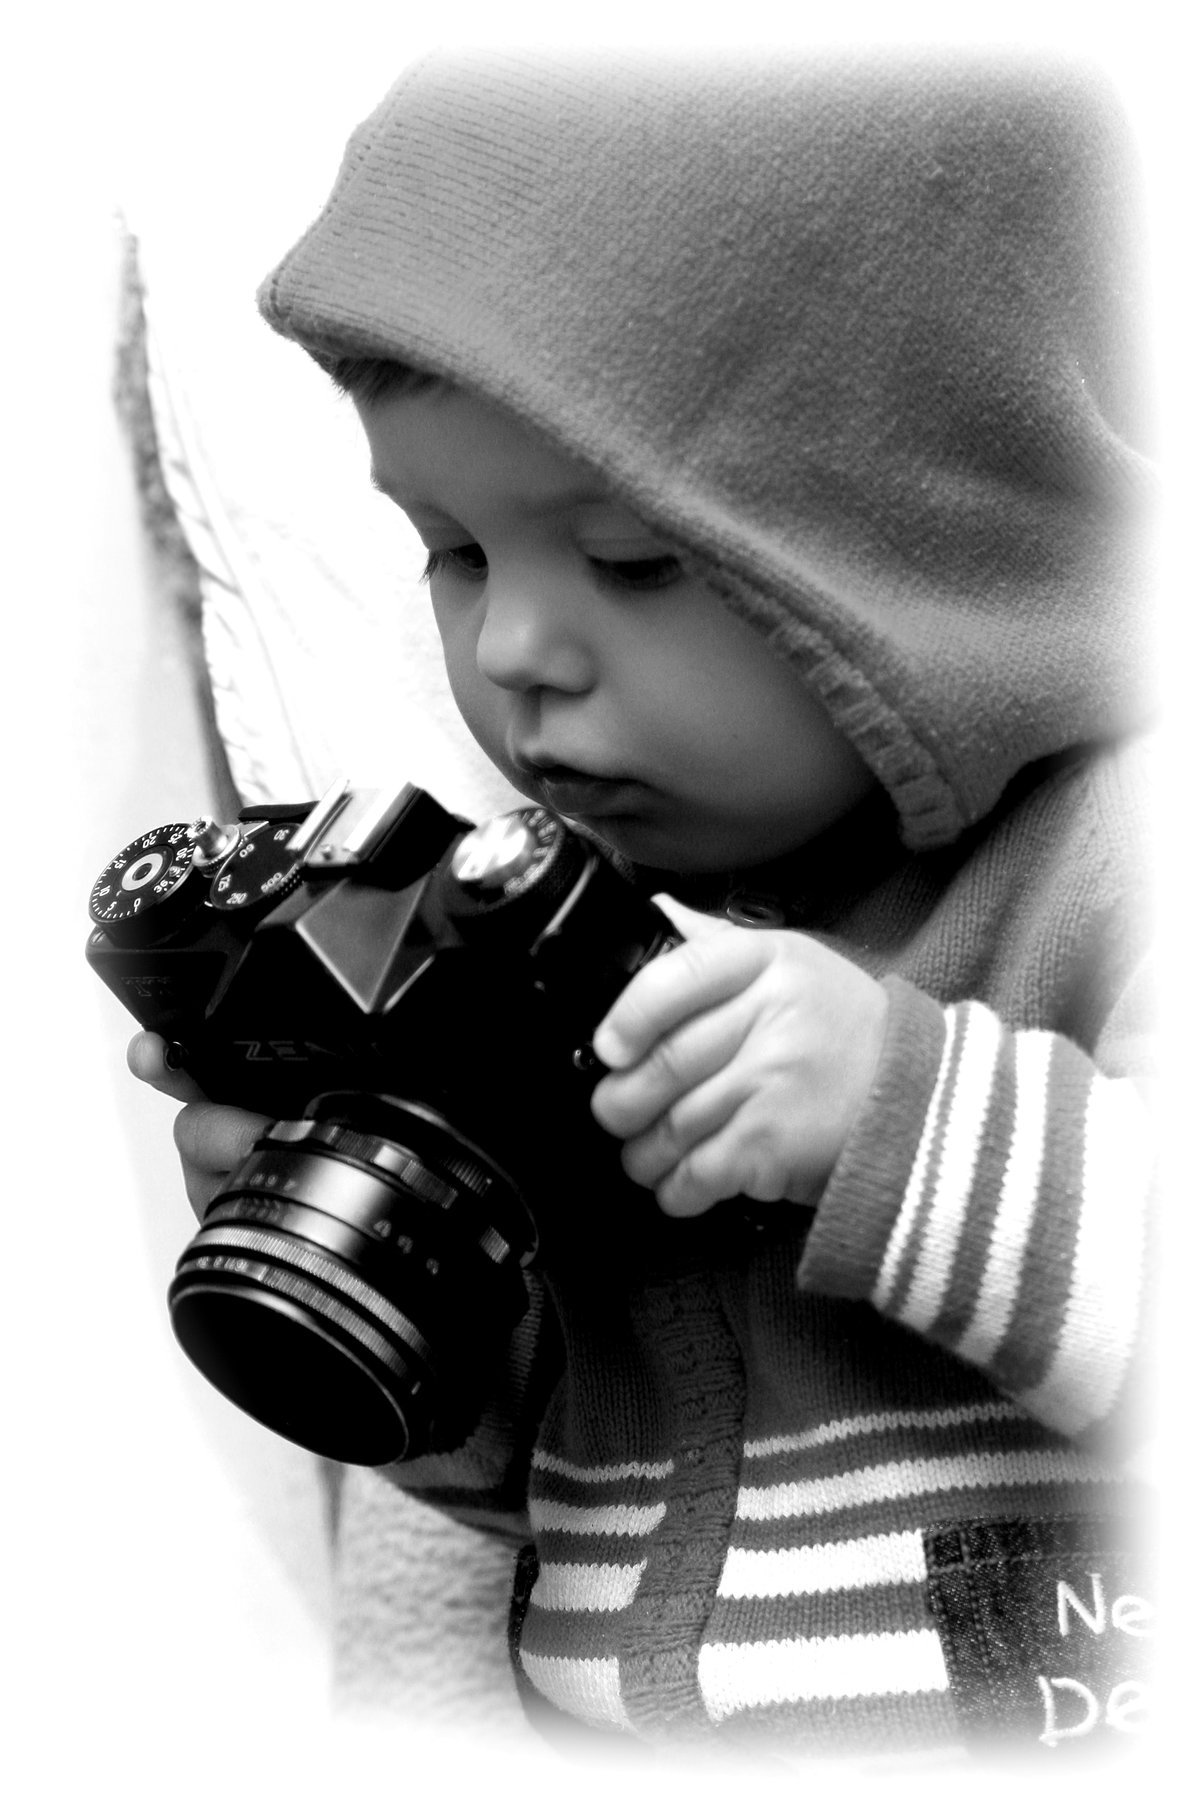 Картинку чтоб поставить. Сережа Шубин. Саша кокс. Фотоаппарат для детей. Крутой малыш.